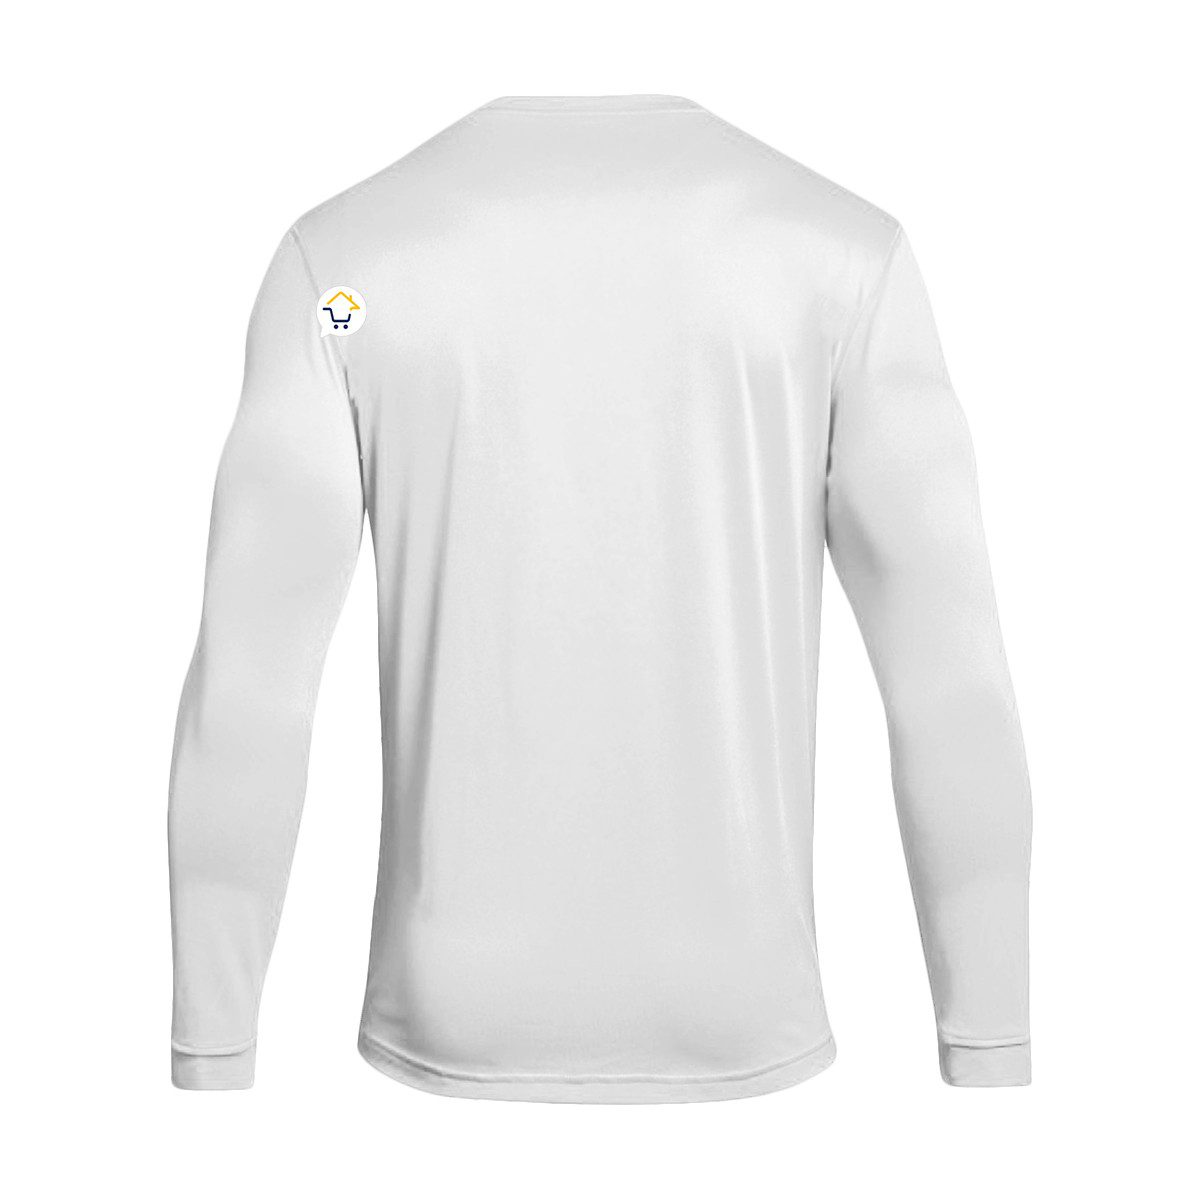 Camiseta Lycra Buso Deportivo 100% Protección Uv Unisex